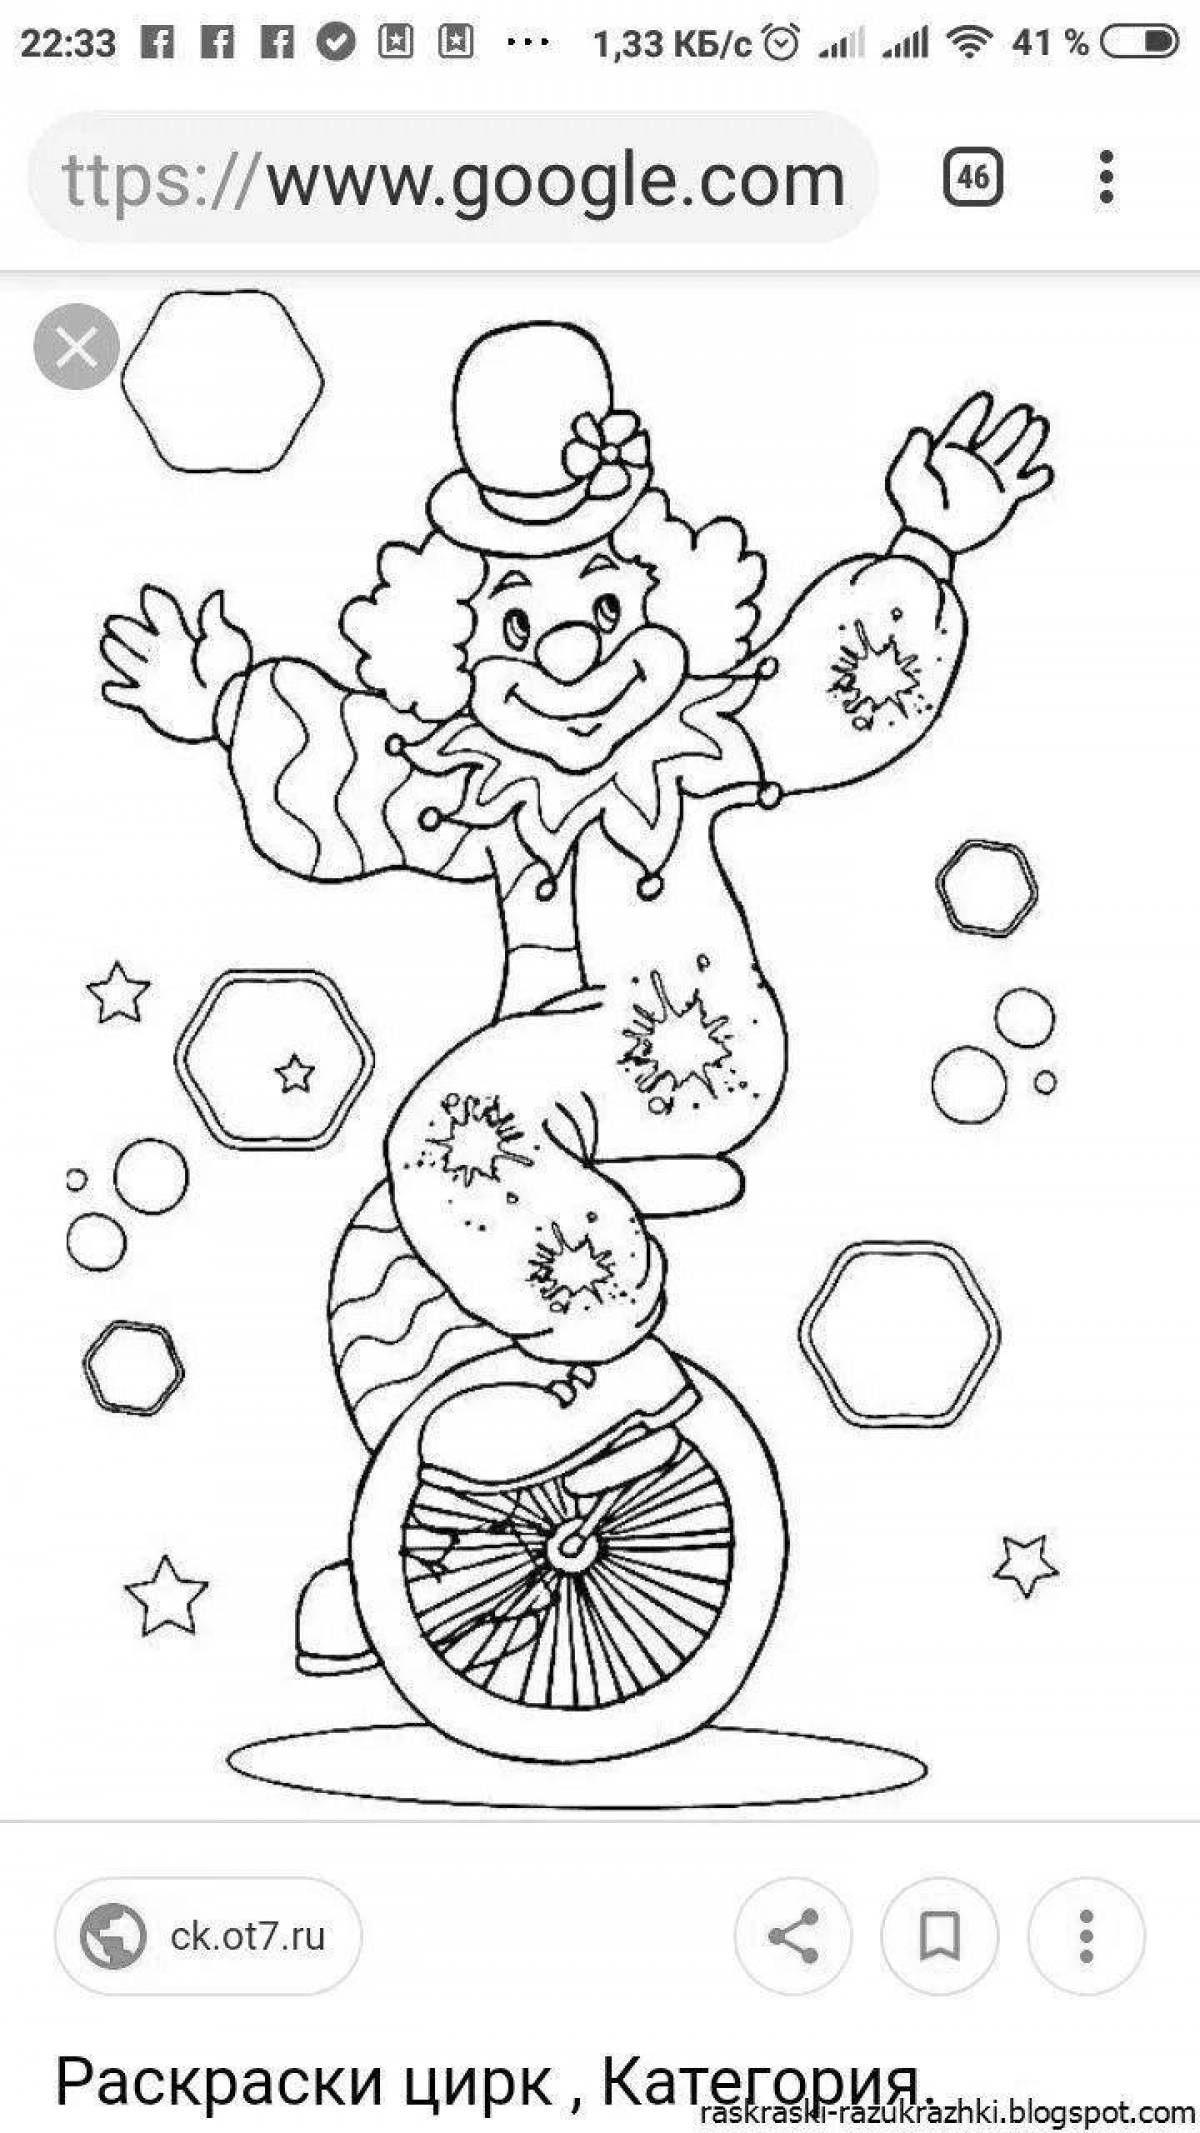 Веселая раскраска клоуна для детей 6-7 лет